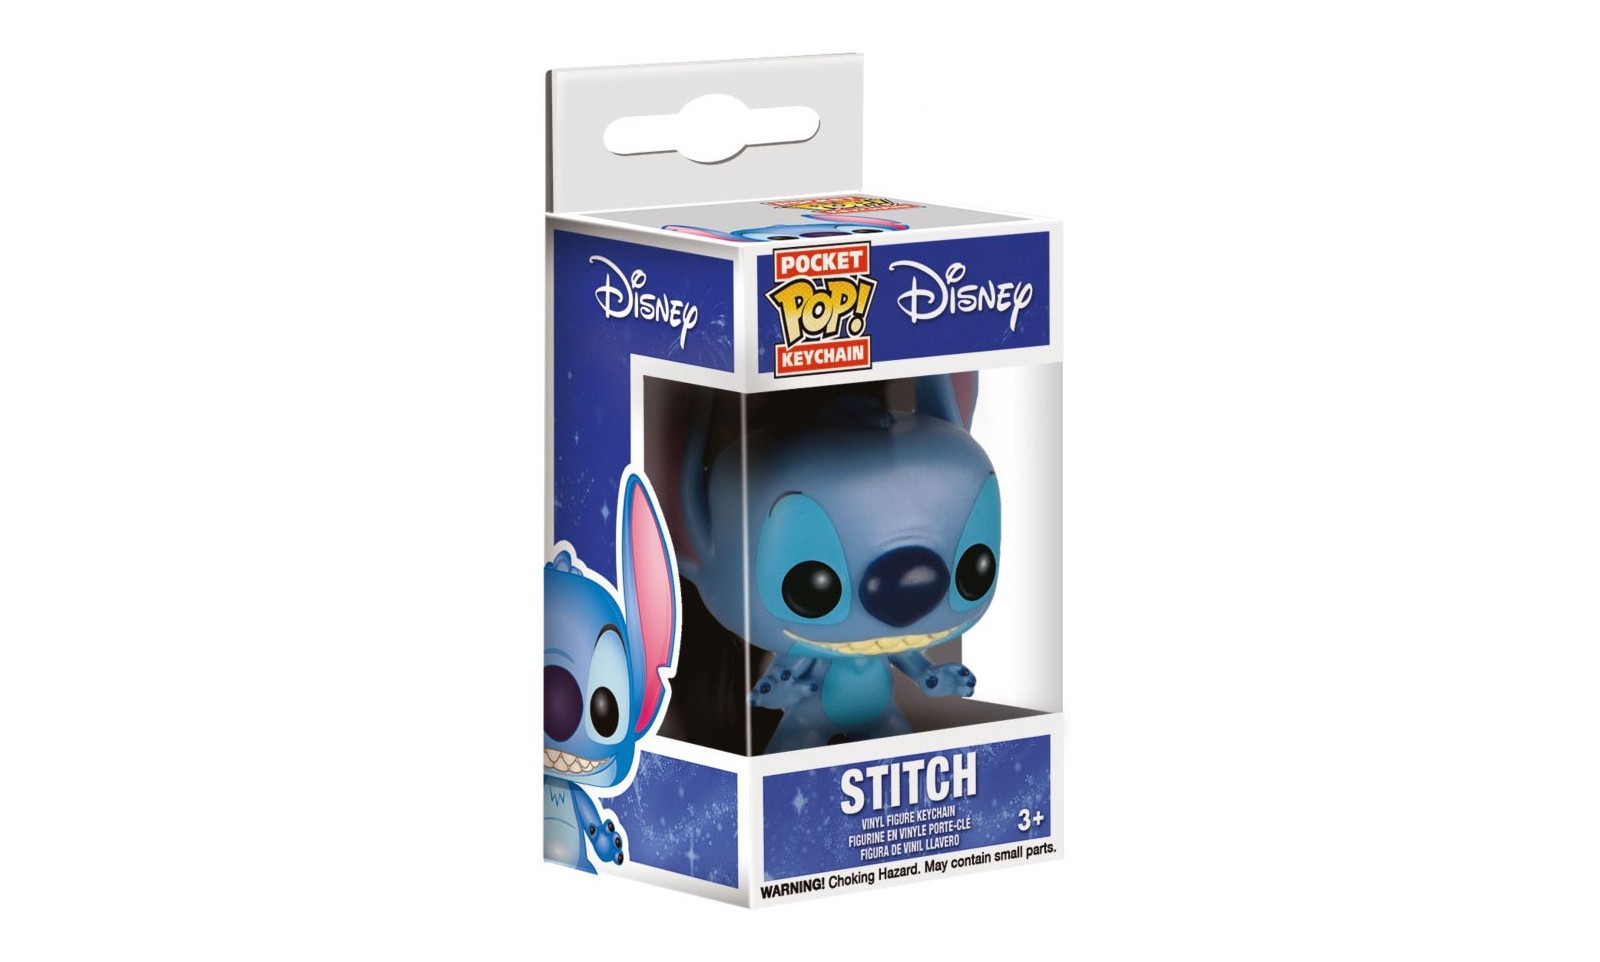 Figurine Pop Lilo et Stitch [Disney] pas cher : Stitch Aloha - Porte-clés